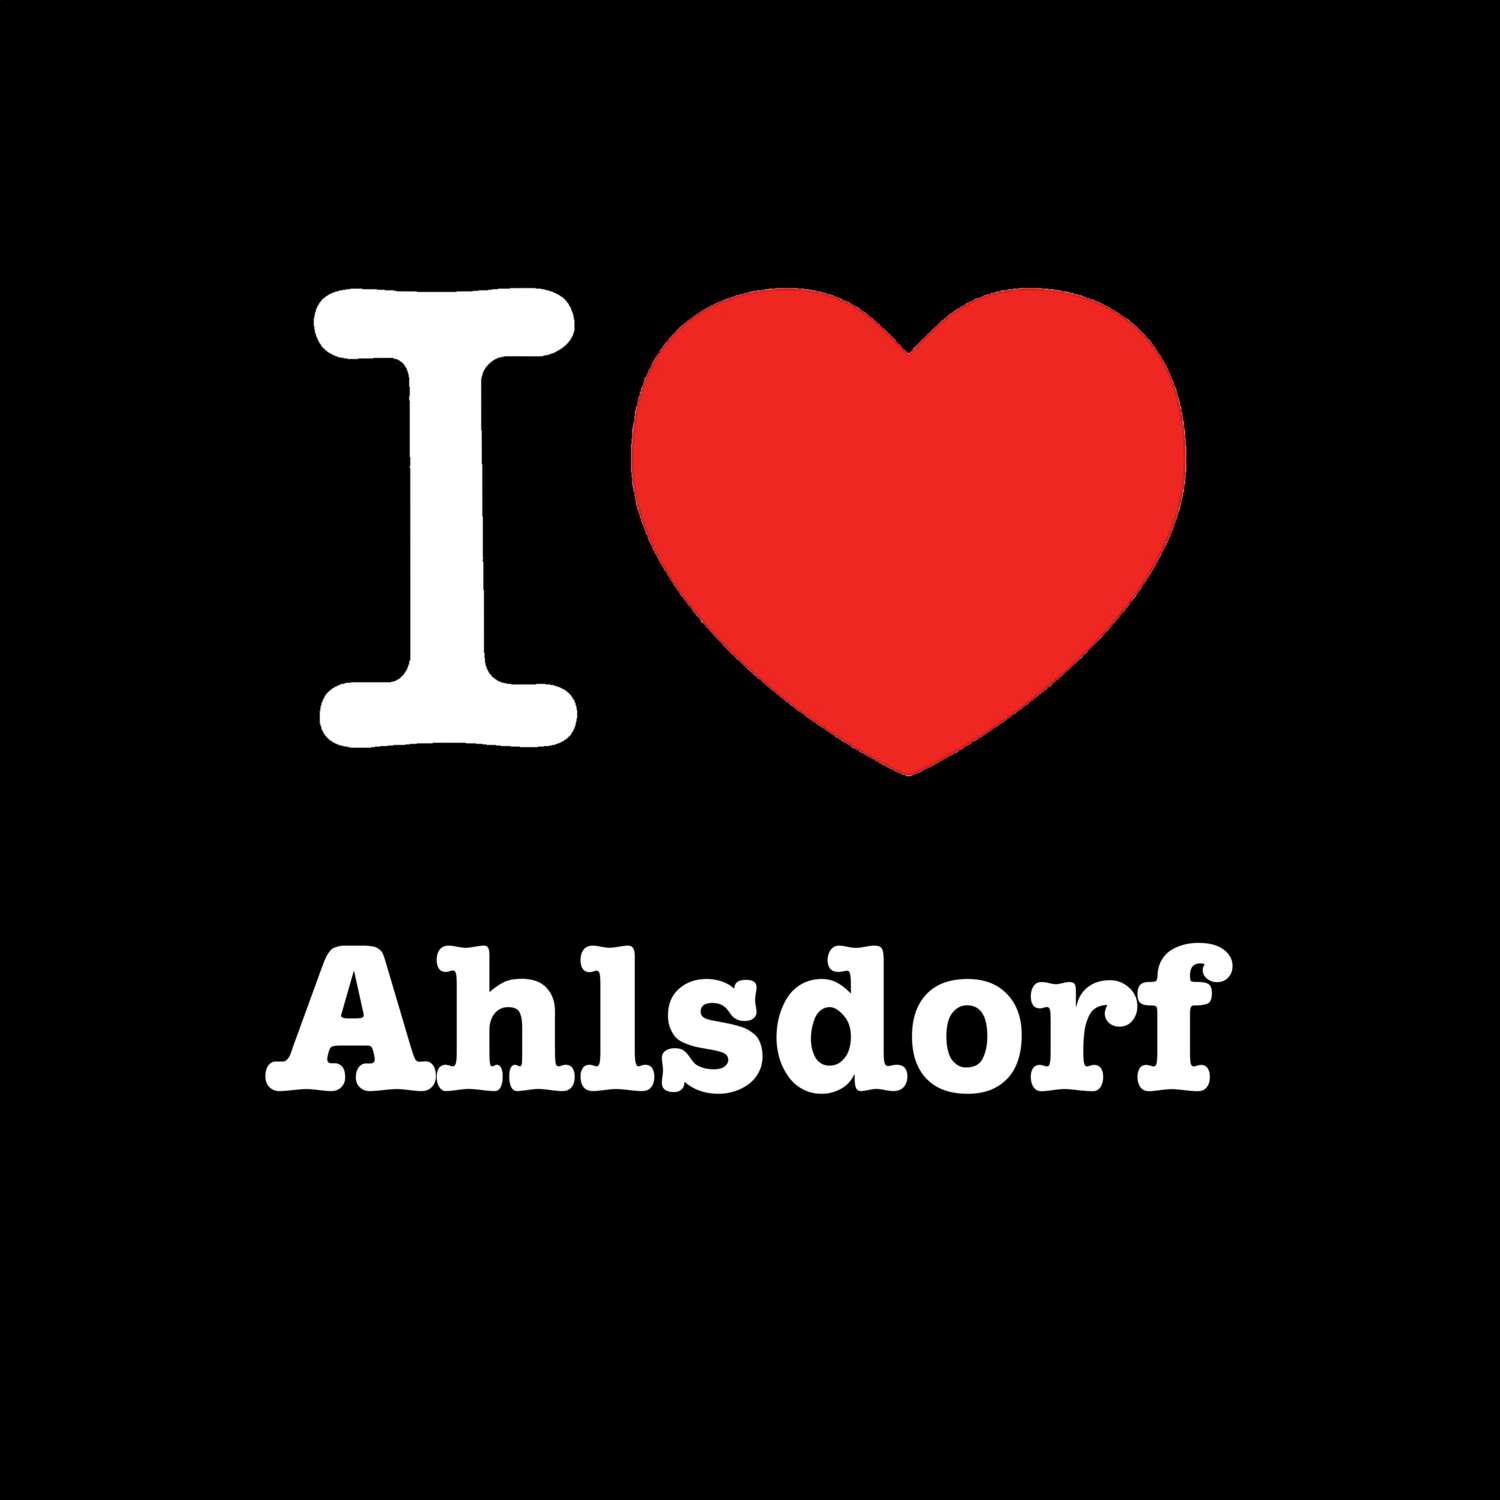 Ahlsdorf T-Shirt »I love«